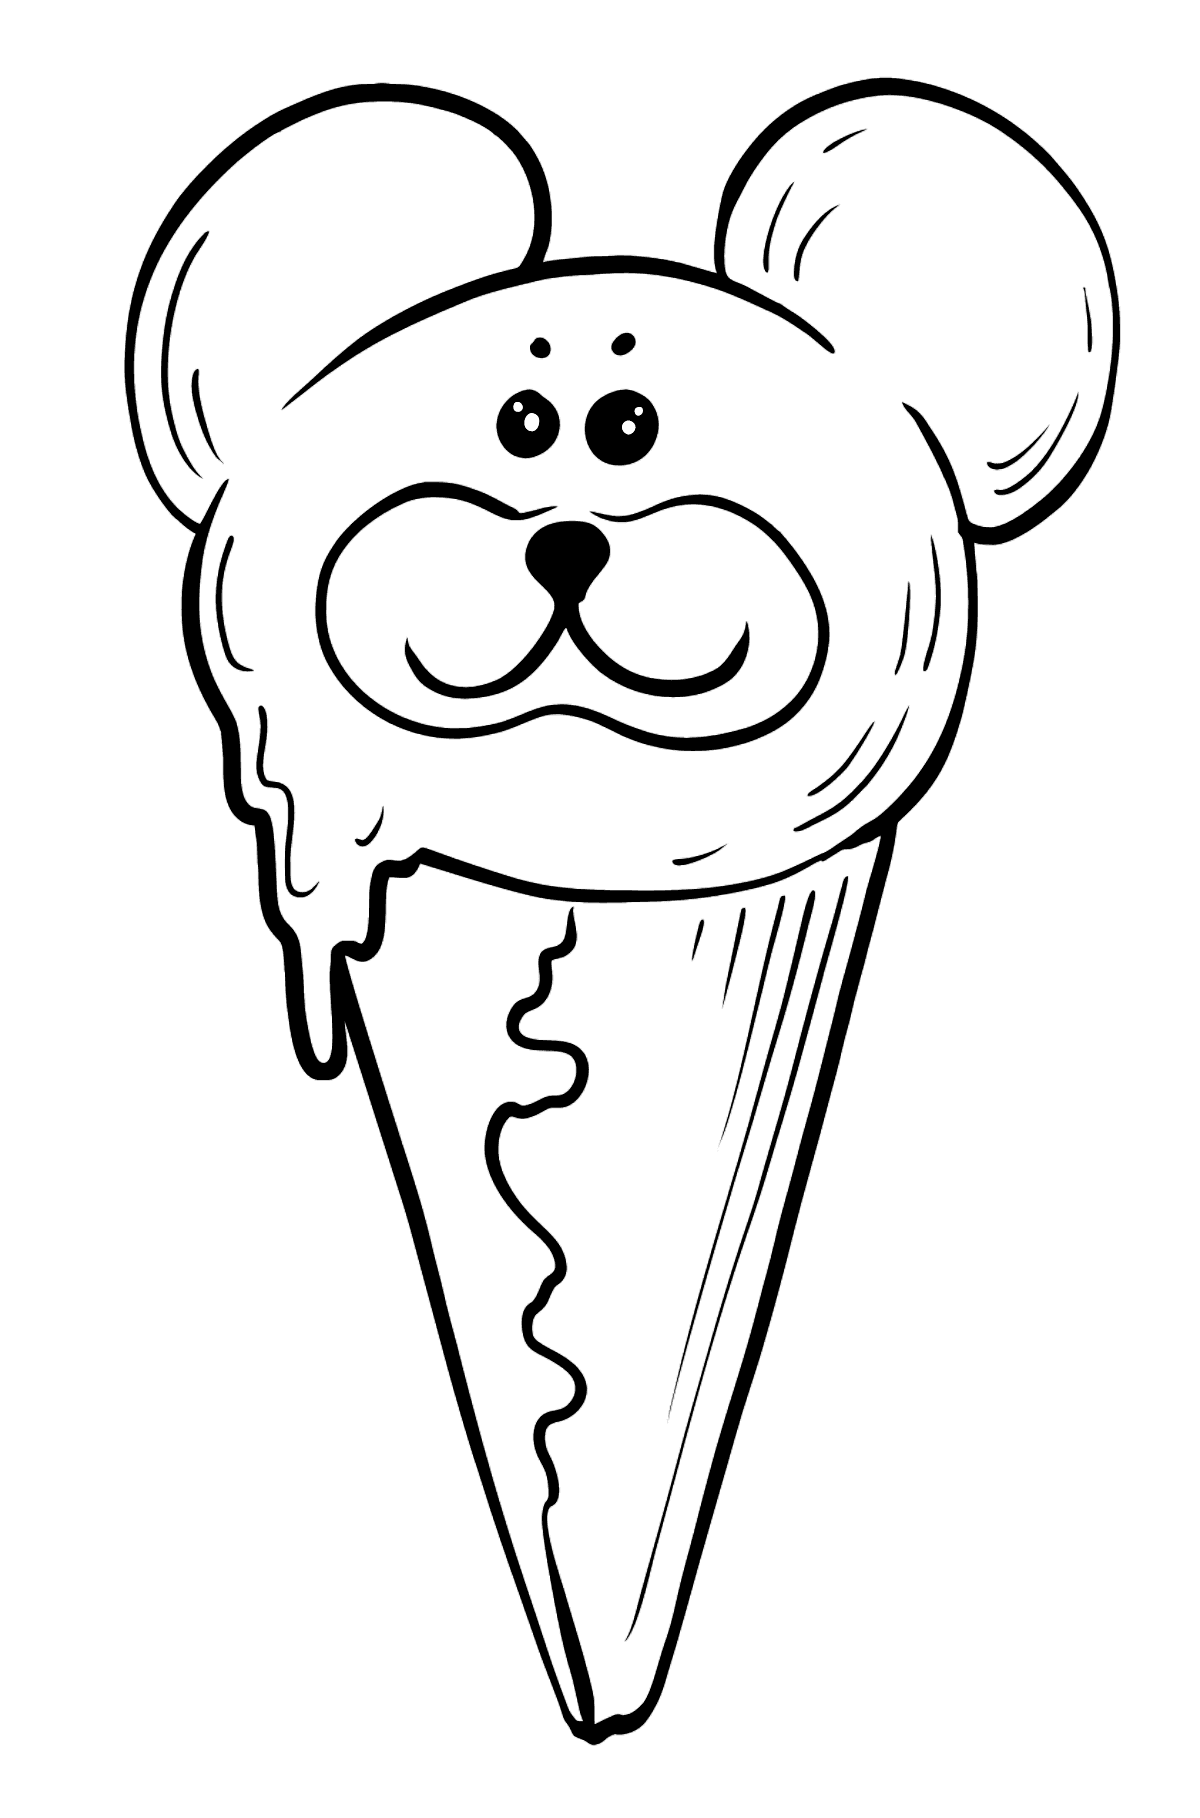 Розмальовка Морозиво - шоколадний ведмідь з очима - Розмальовки для дітей